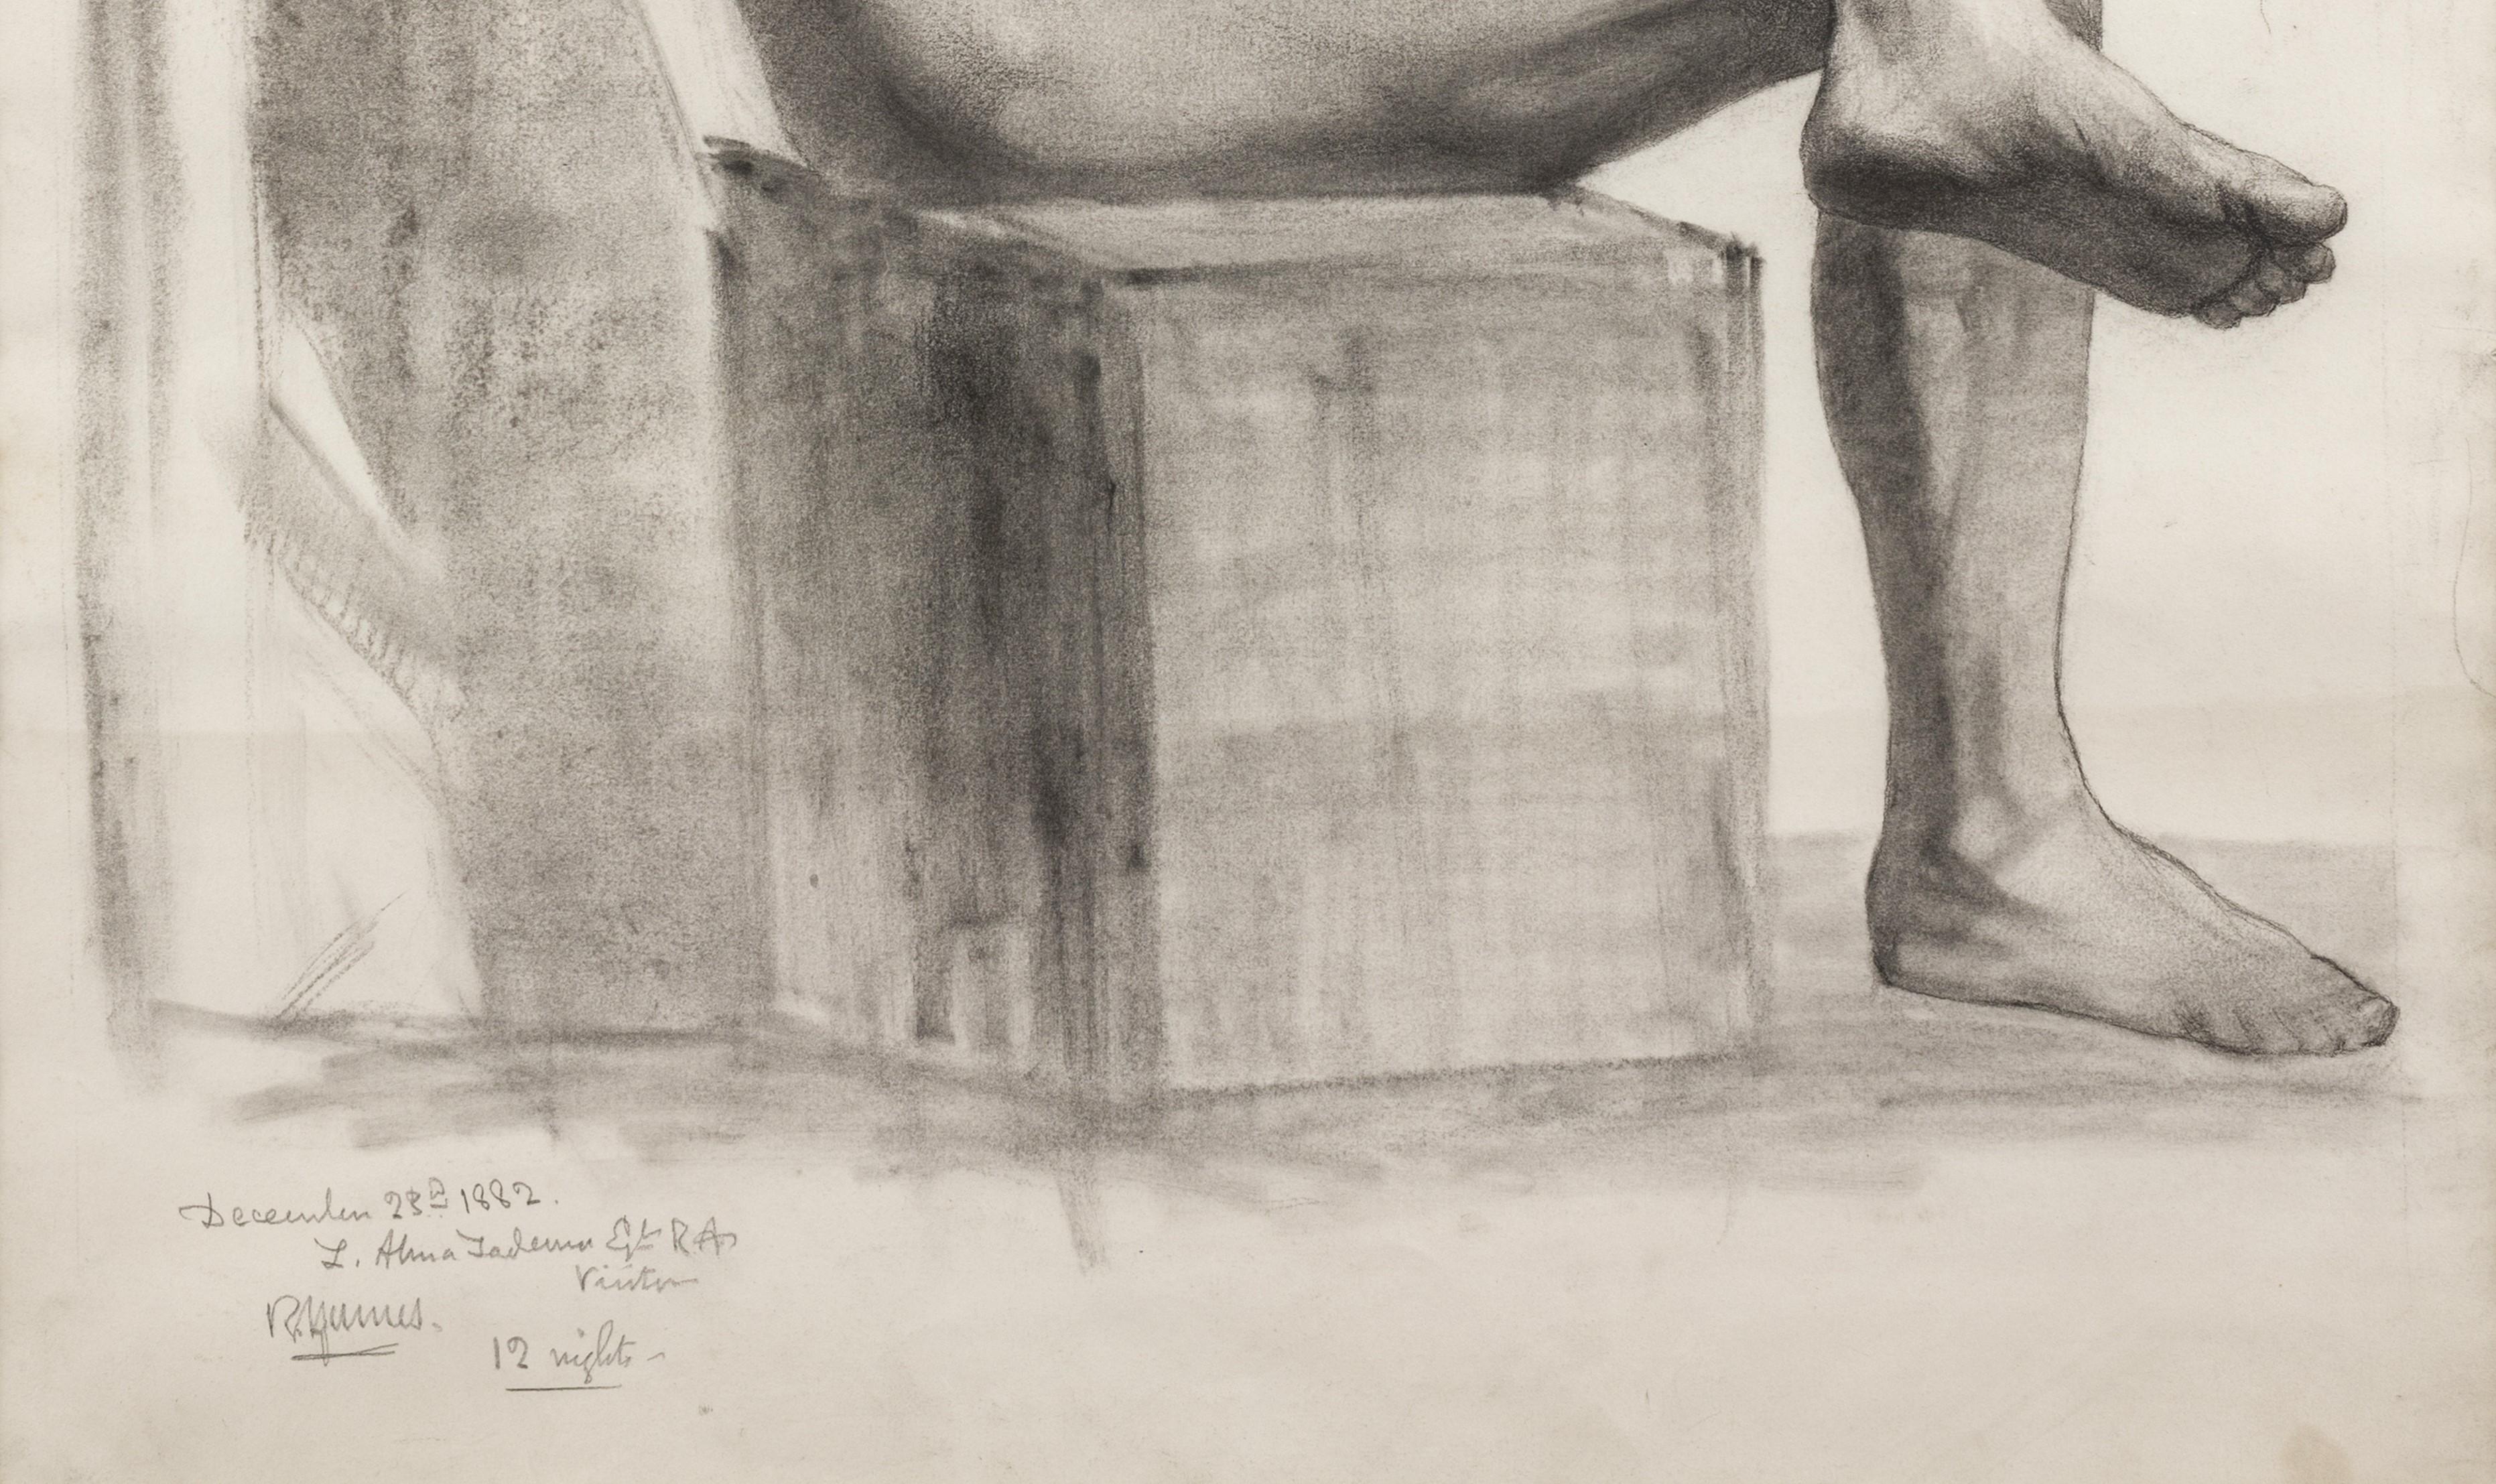 Fusain sur papier, signé par l'artiste (en haut à droite), et par le visiteur I.L.A., RA, et daté (en bas à gauche), 76cm x 57cm, (64cm x 88cm encadré). 

Olivier a étudié aux écoles de la Royal Academy à partir de 1881, où s'est déroulée cette